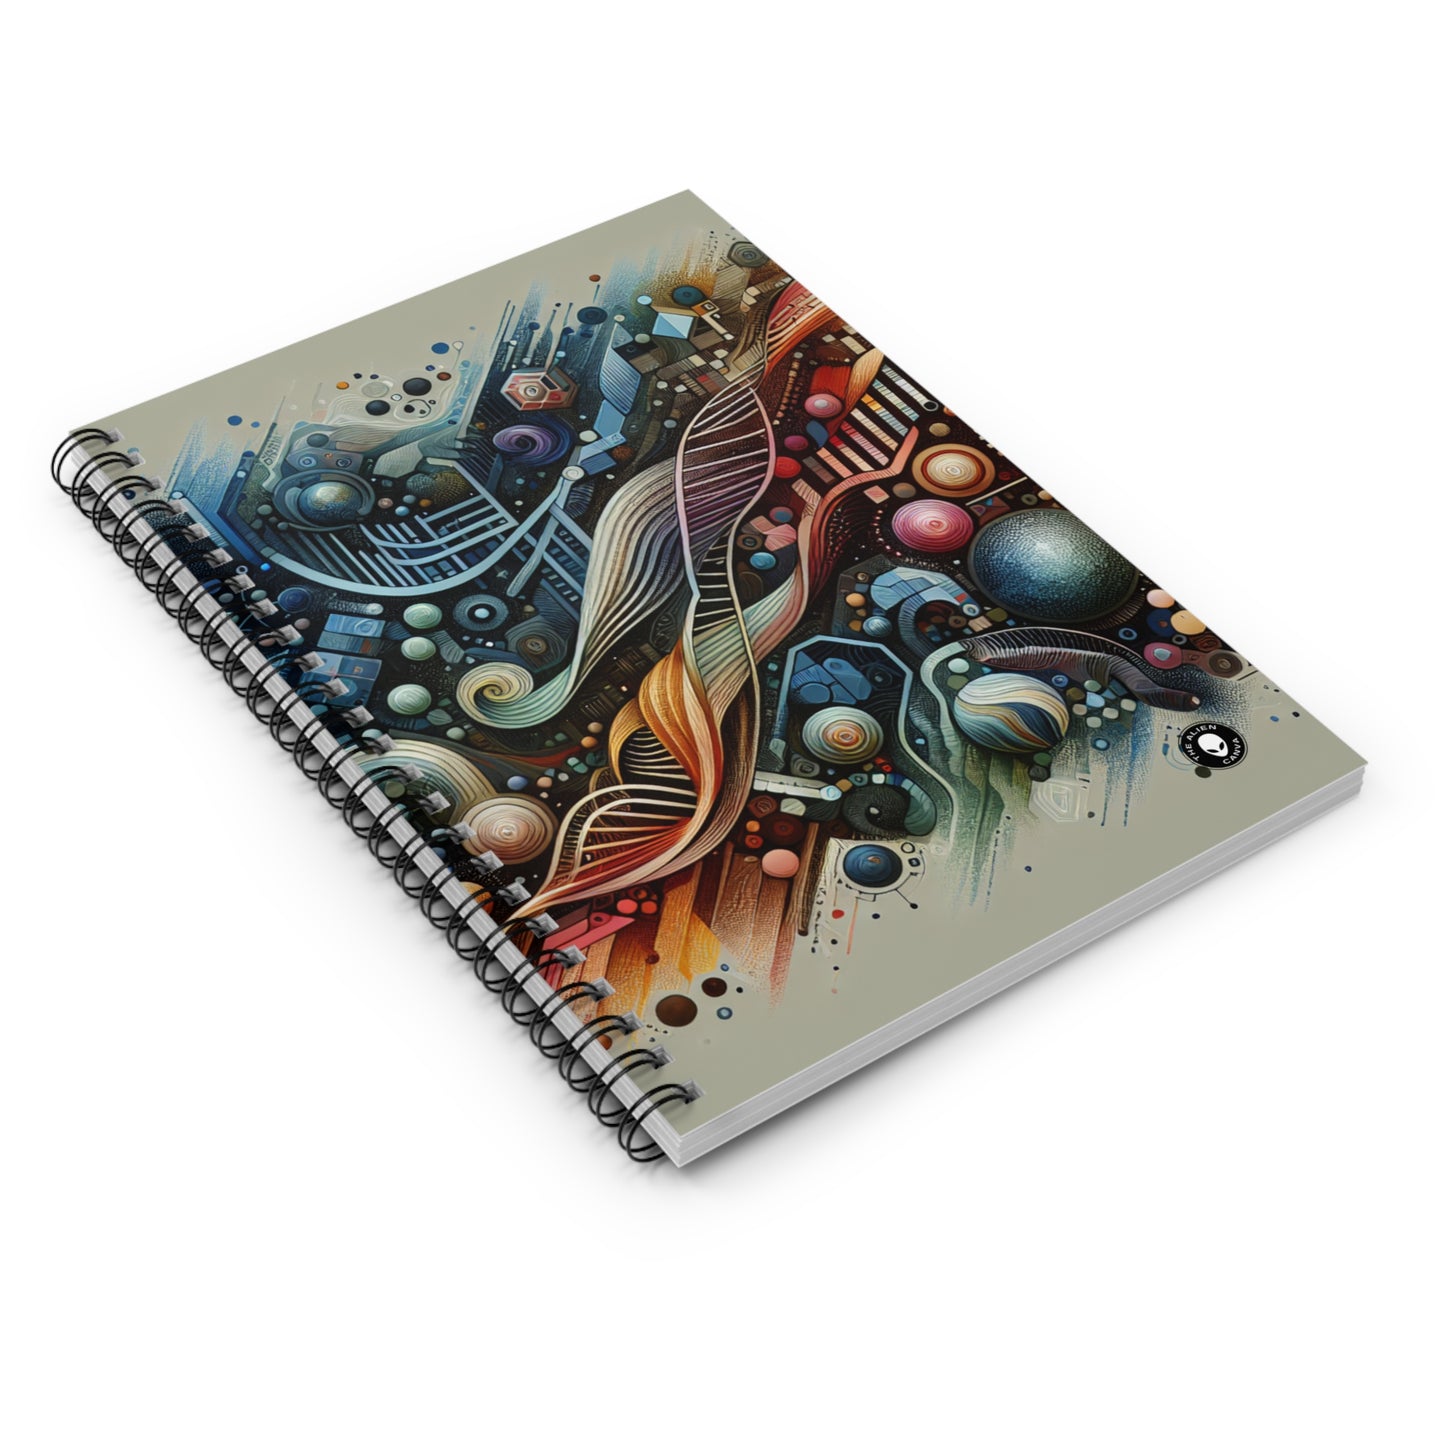 "Biofuturismo: arte inspirado en alas de mariposa" - Cuaderno de espiral The Alien (línea reglada) Bio Art